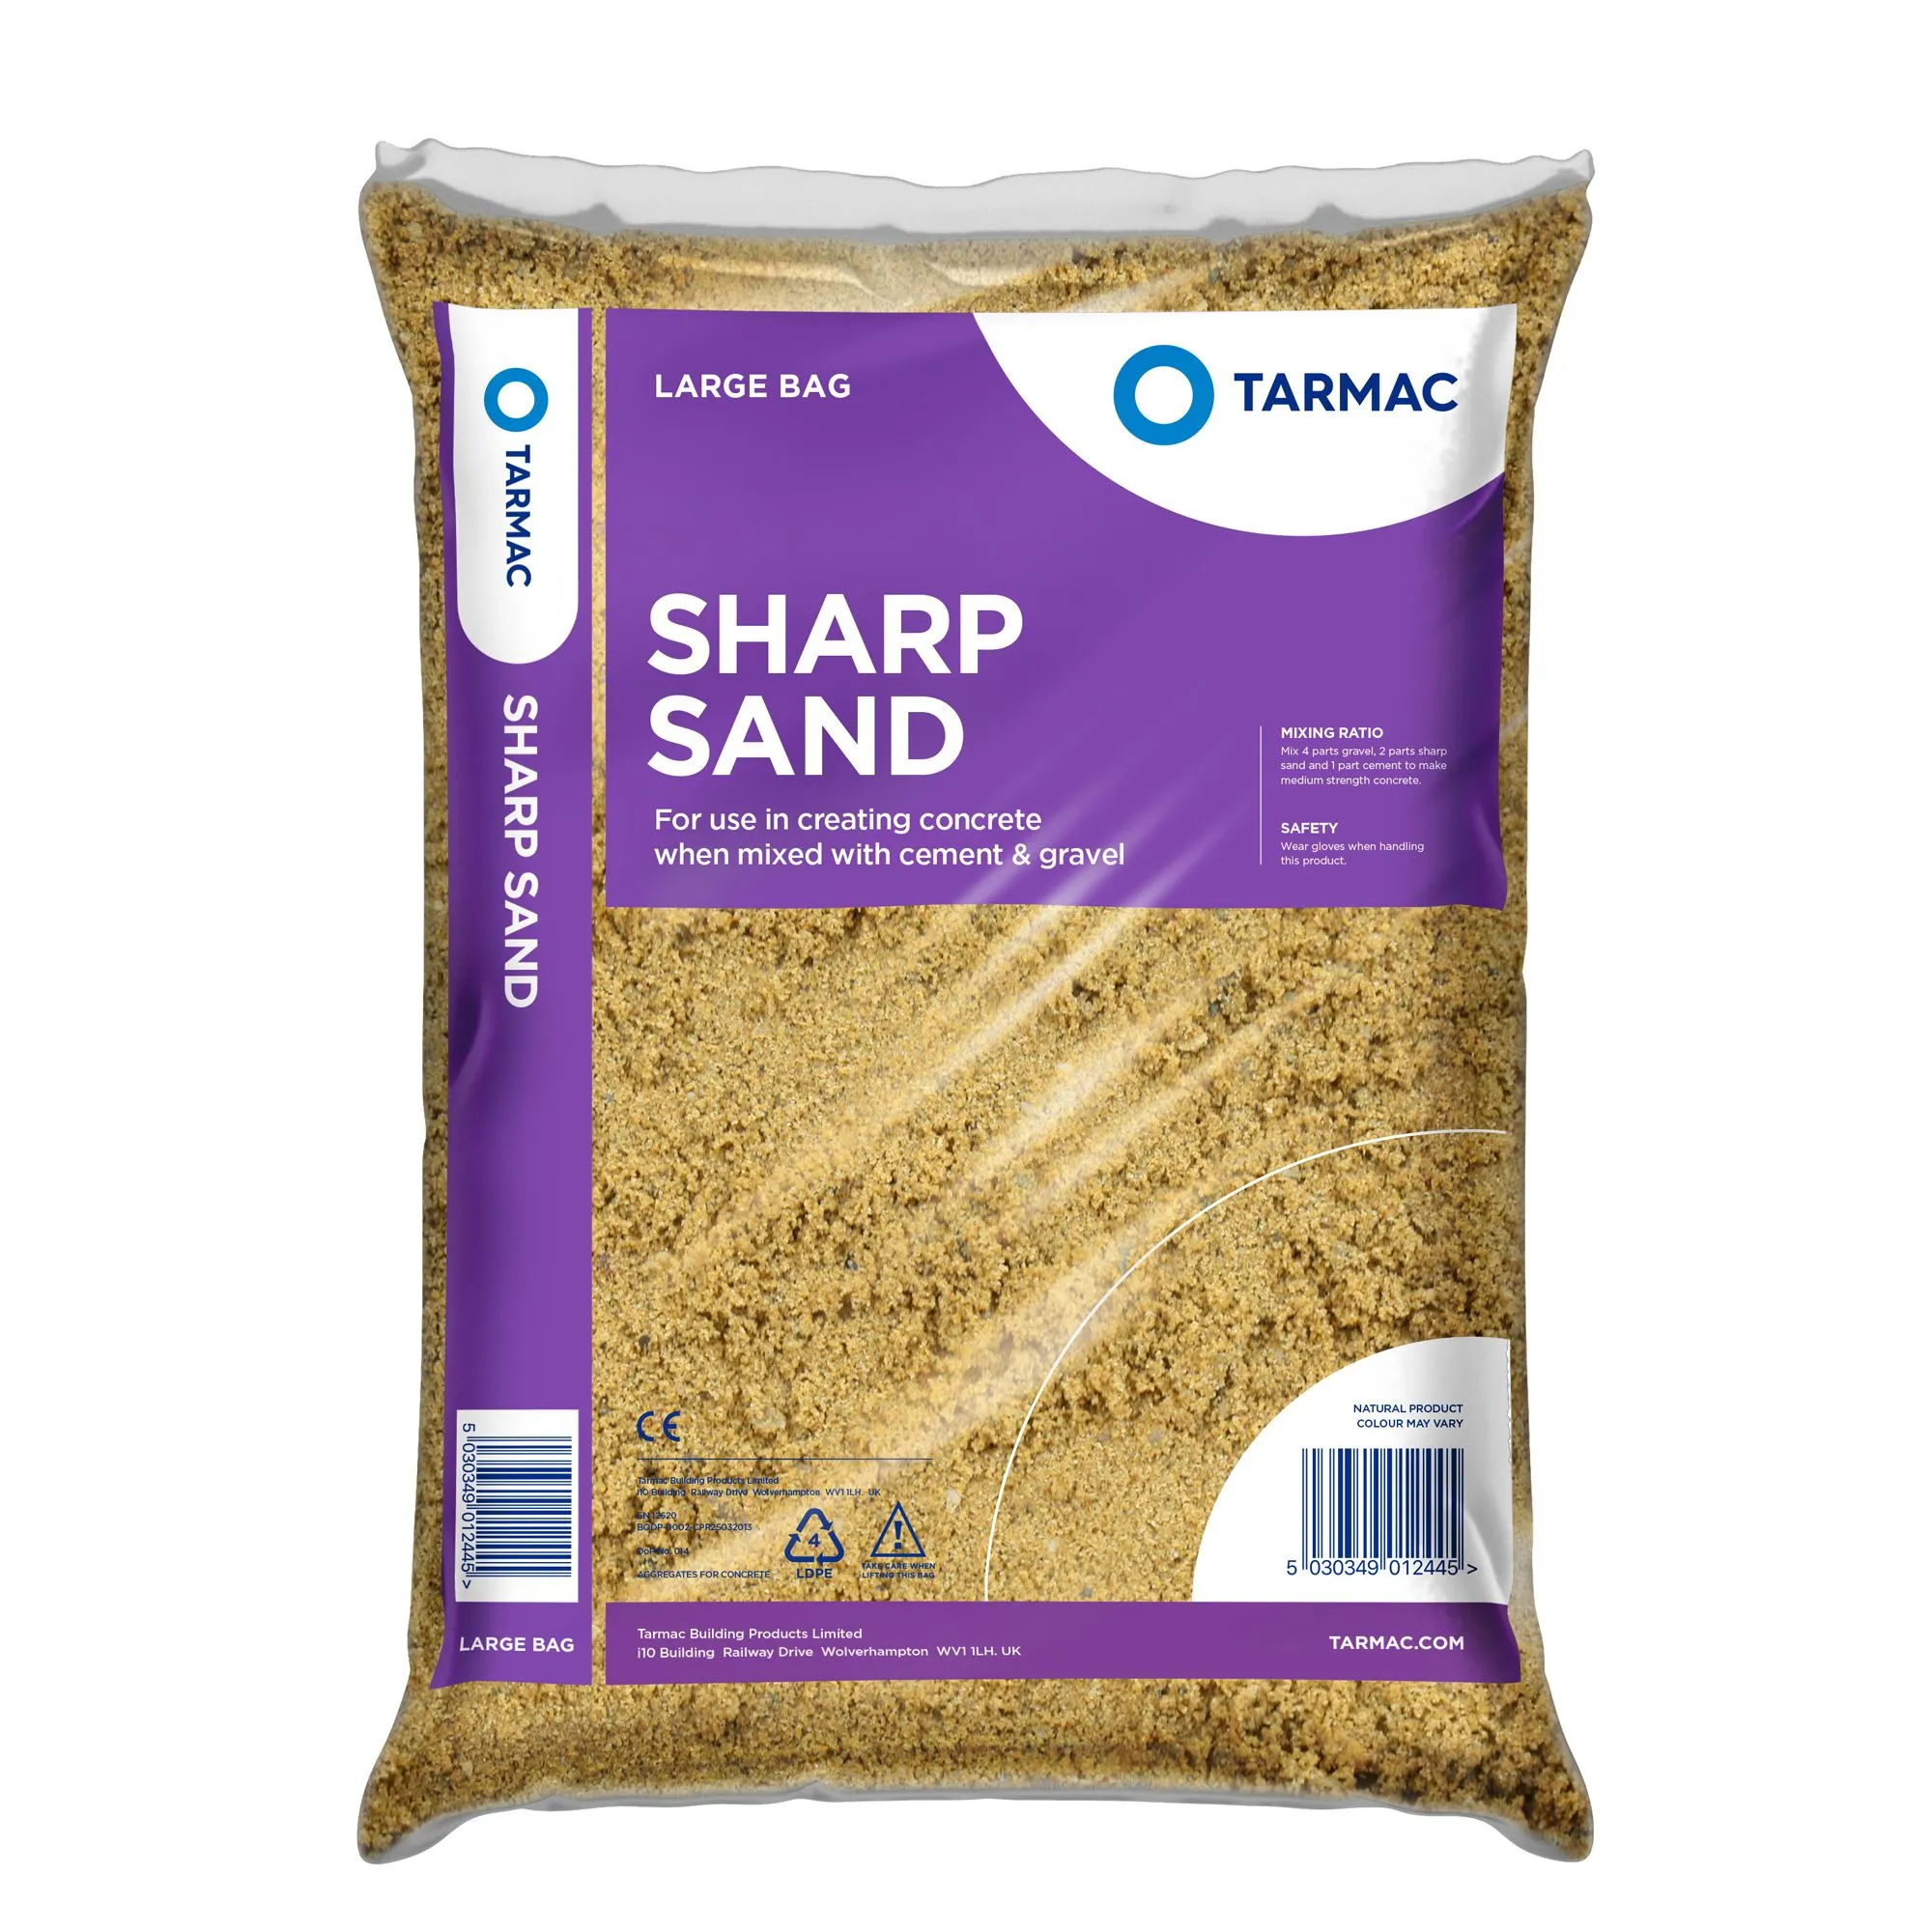 Tarmac Sharp sand, Large Bag